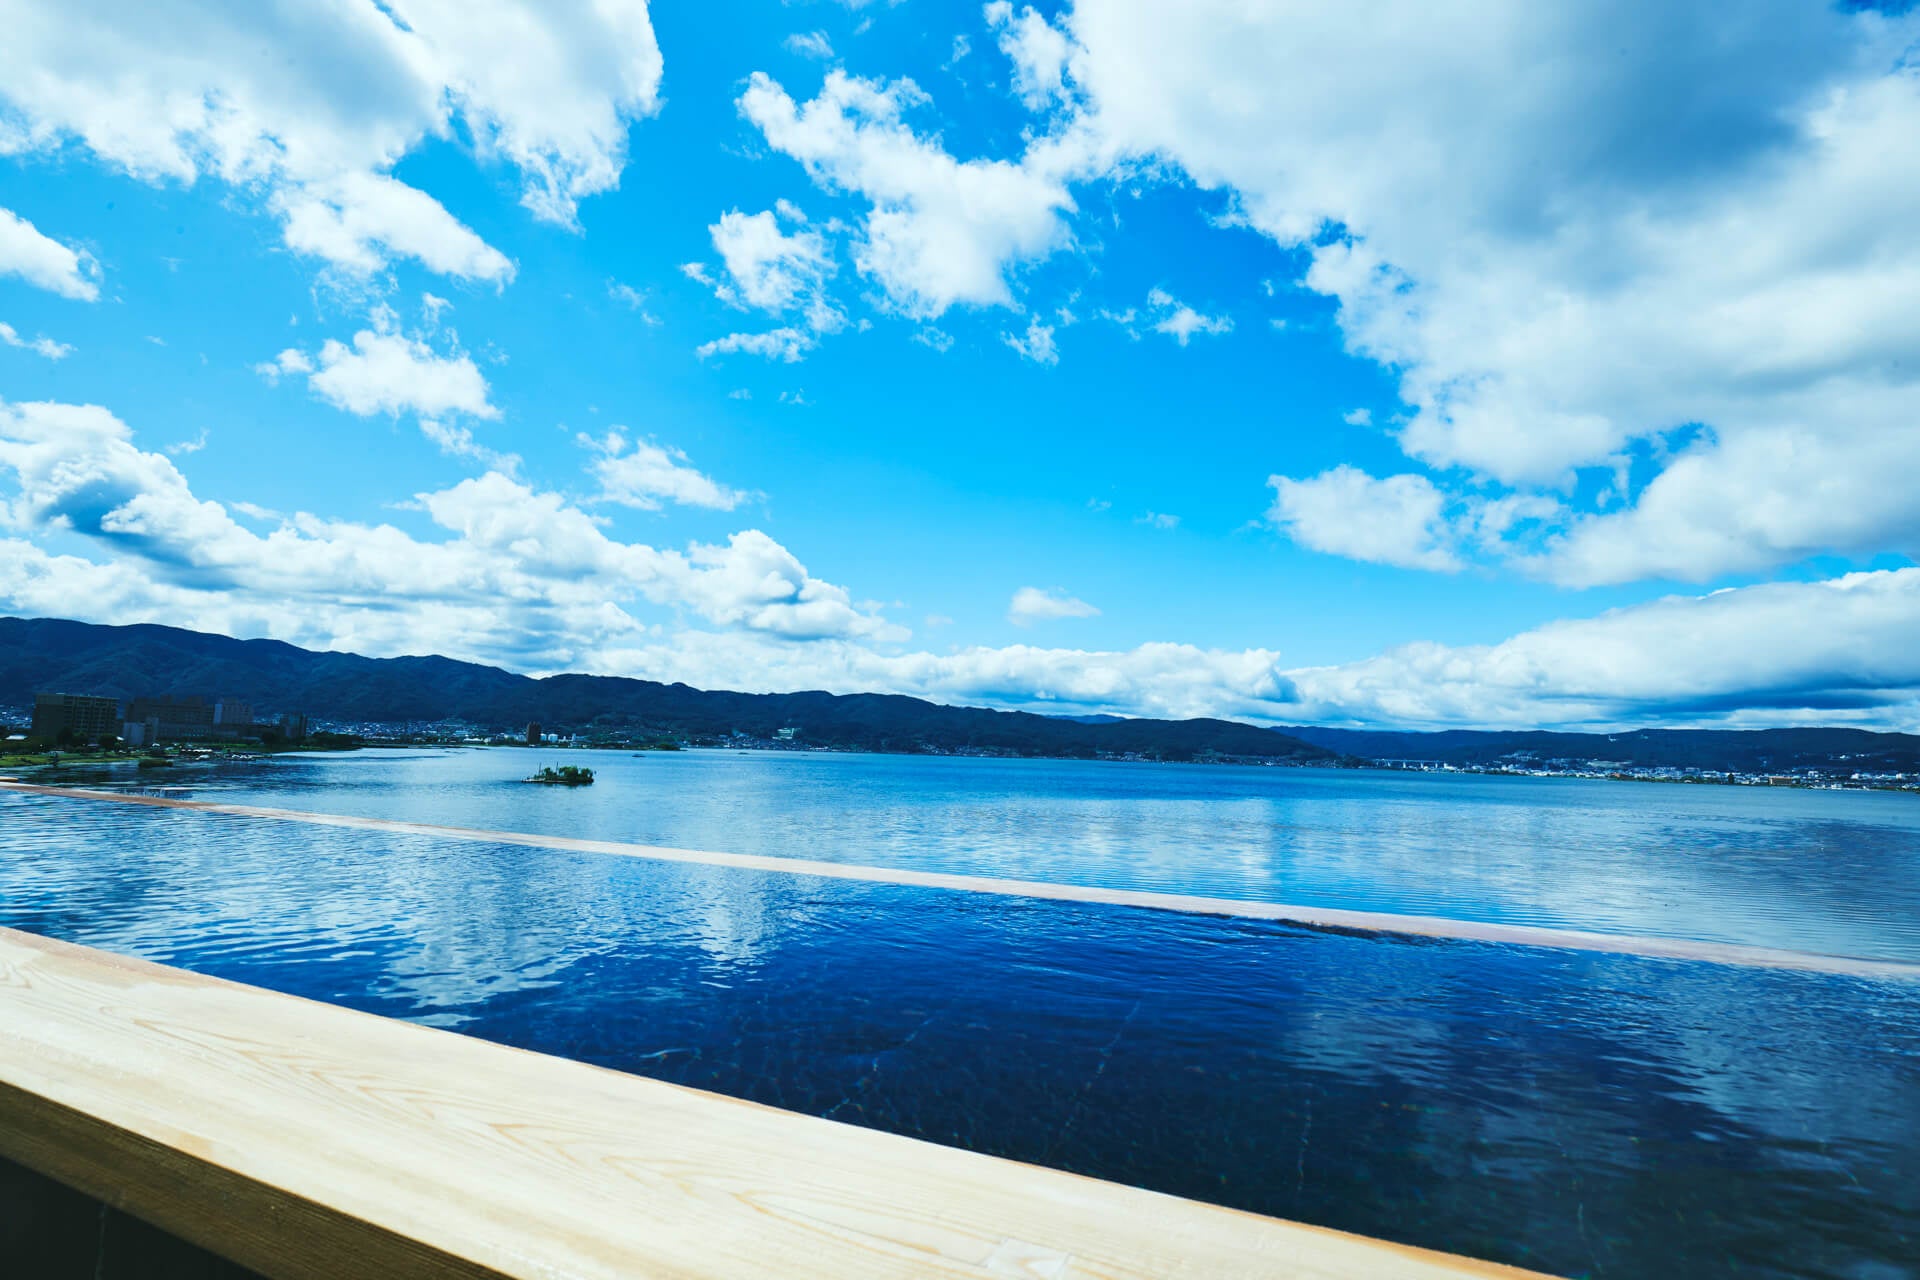 諏訪湖と一体となったかのような景色が広がる「萃sui-諏訪湖」の展望露天風呂